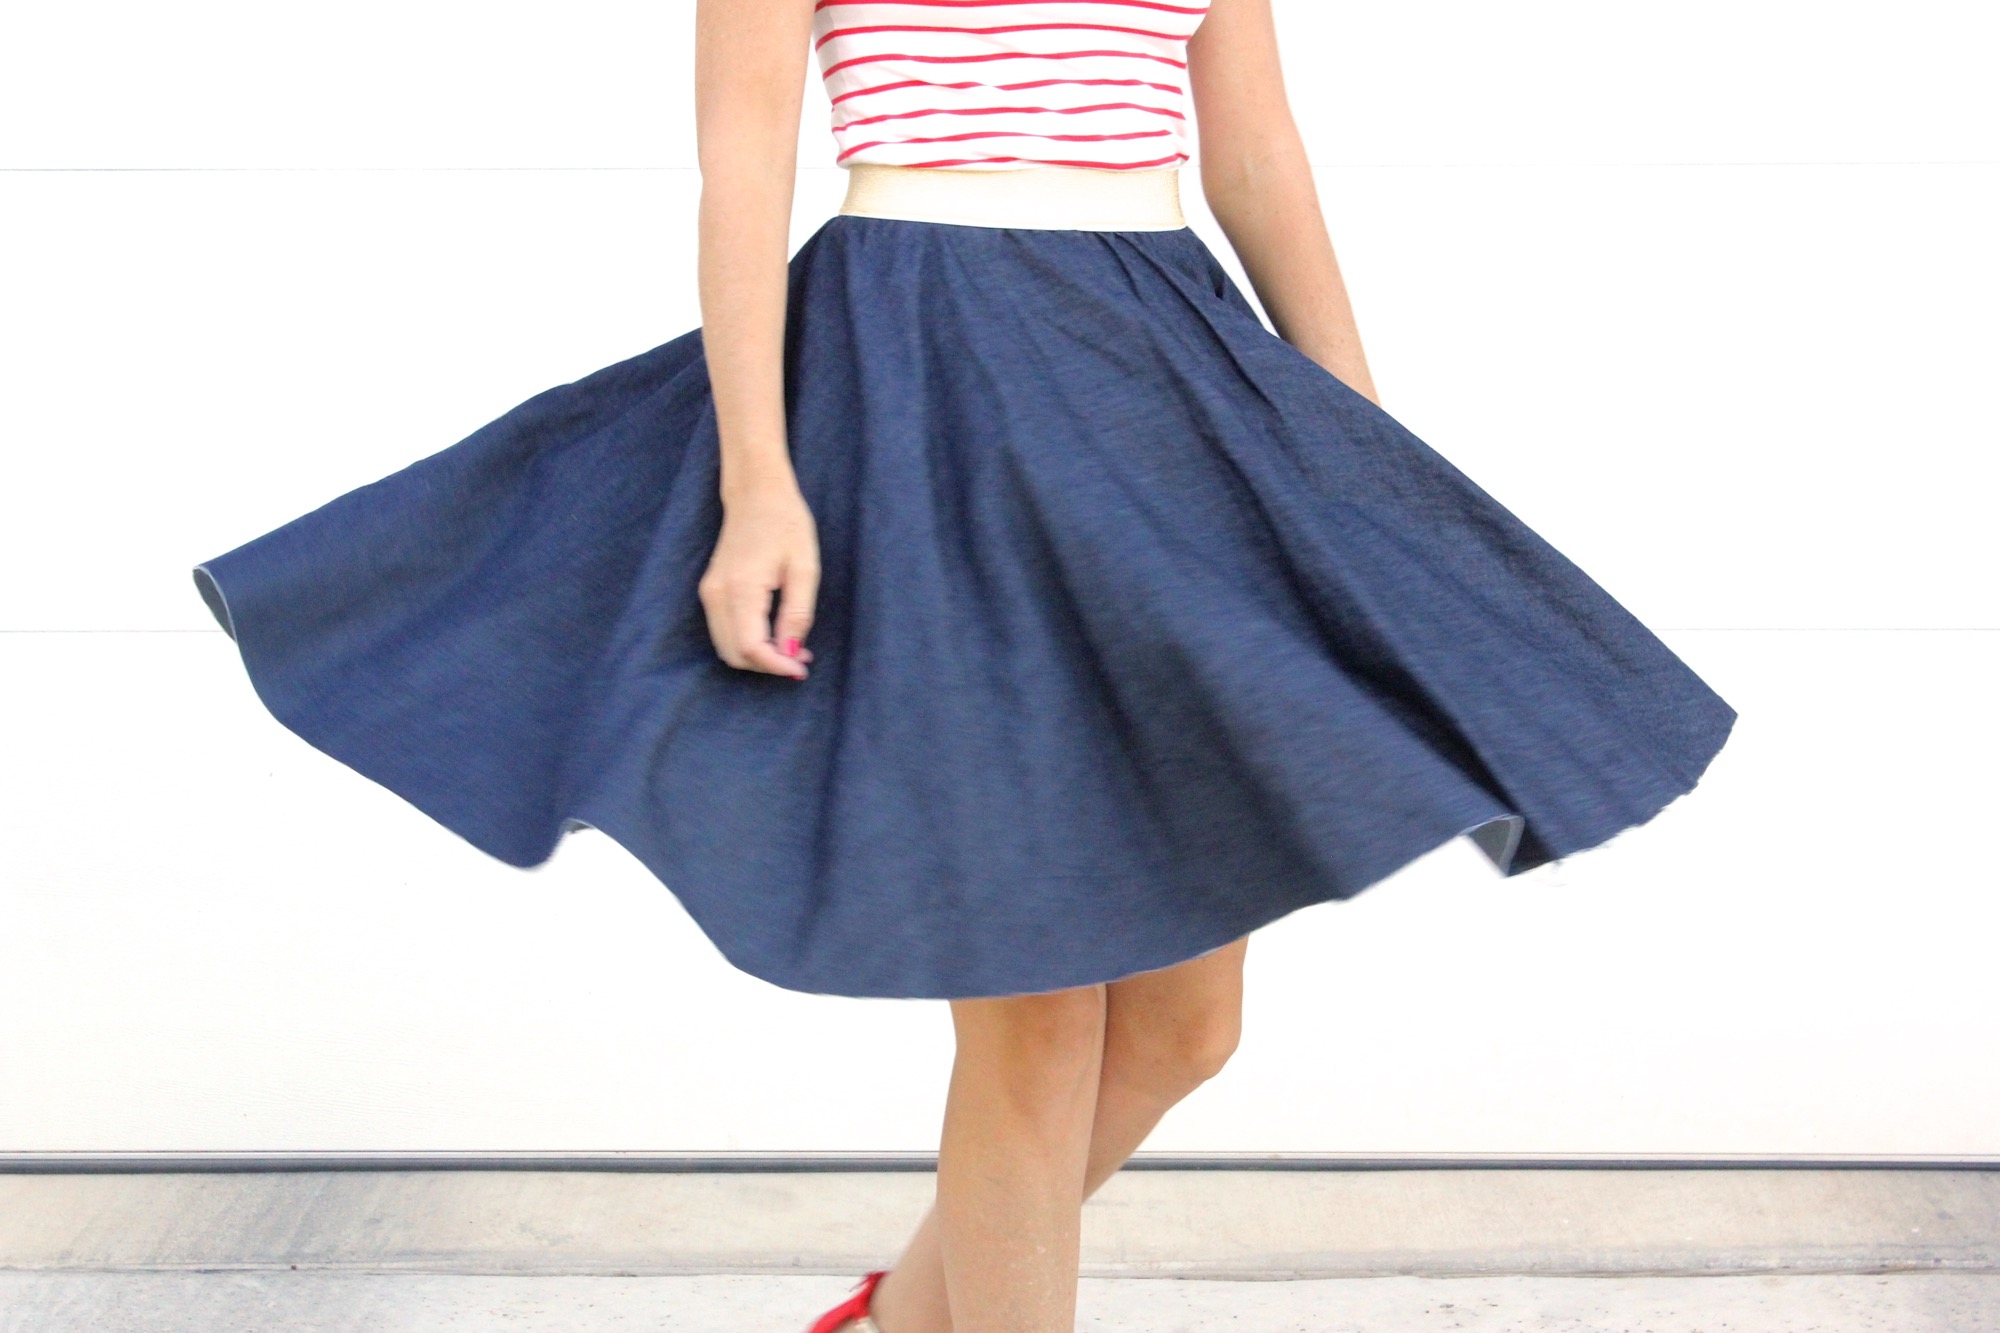 Circular Skirt